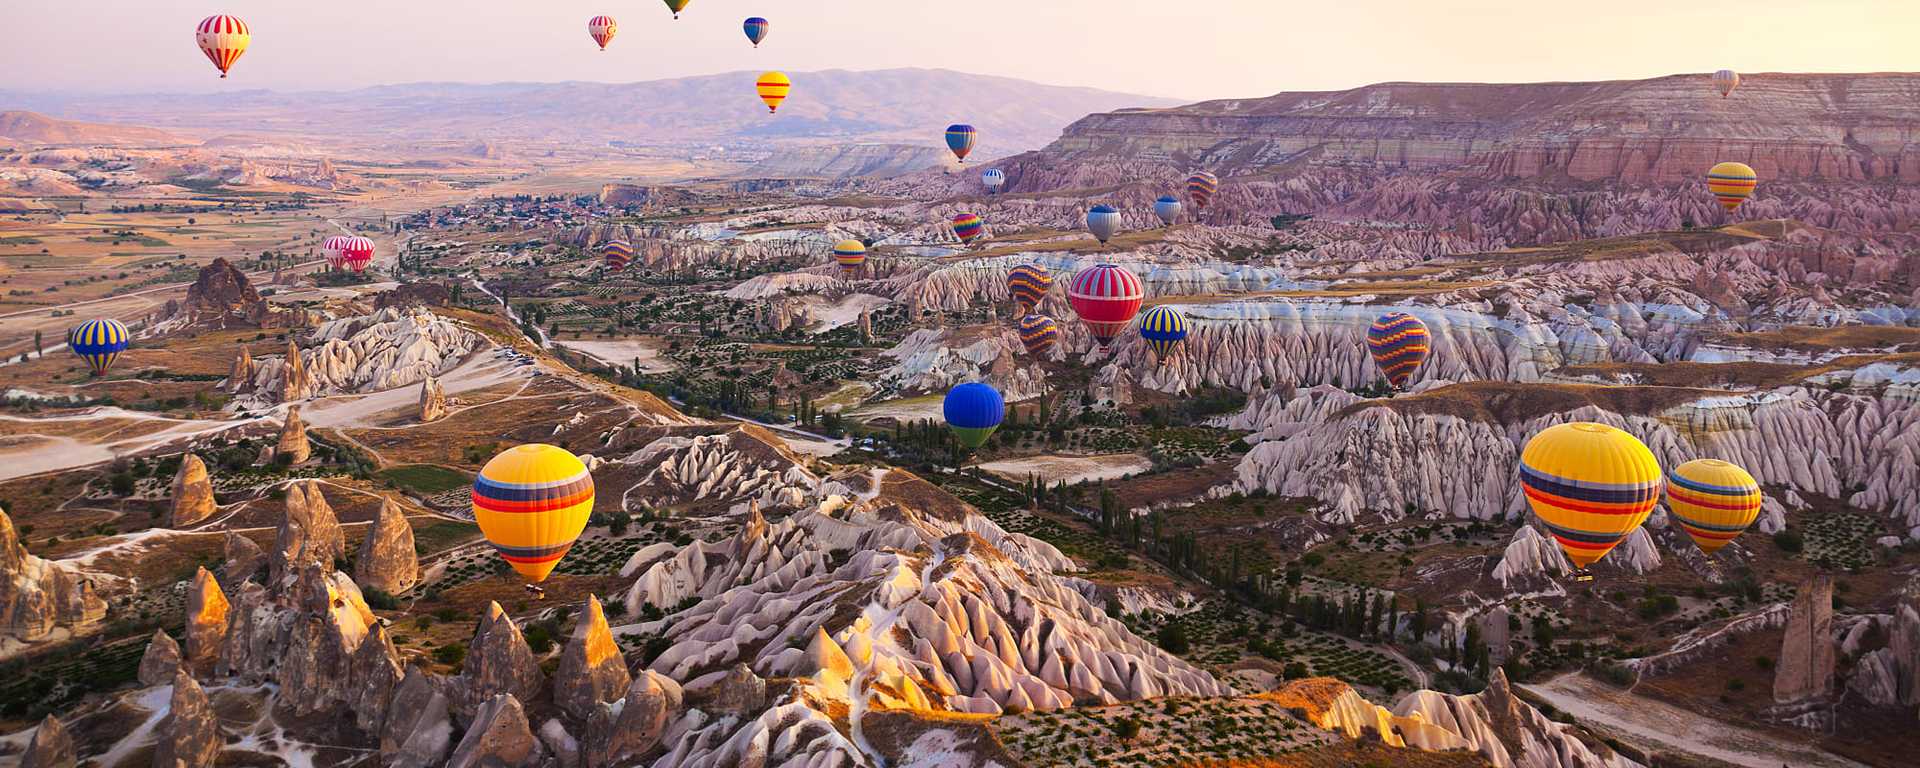 Hot air balloons in flight over Cappadocia, Turkey